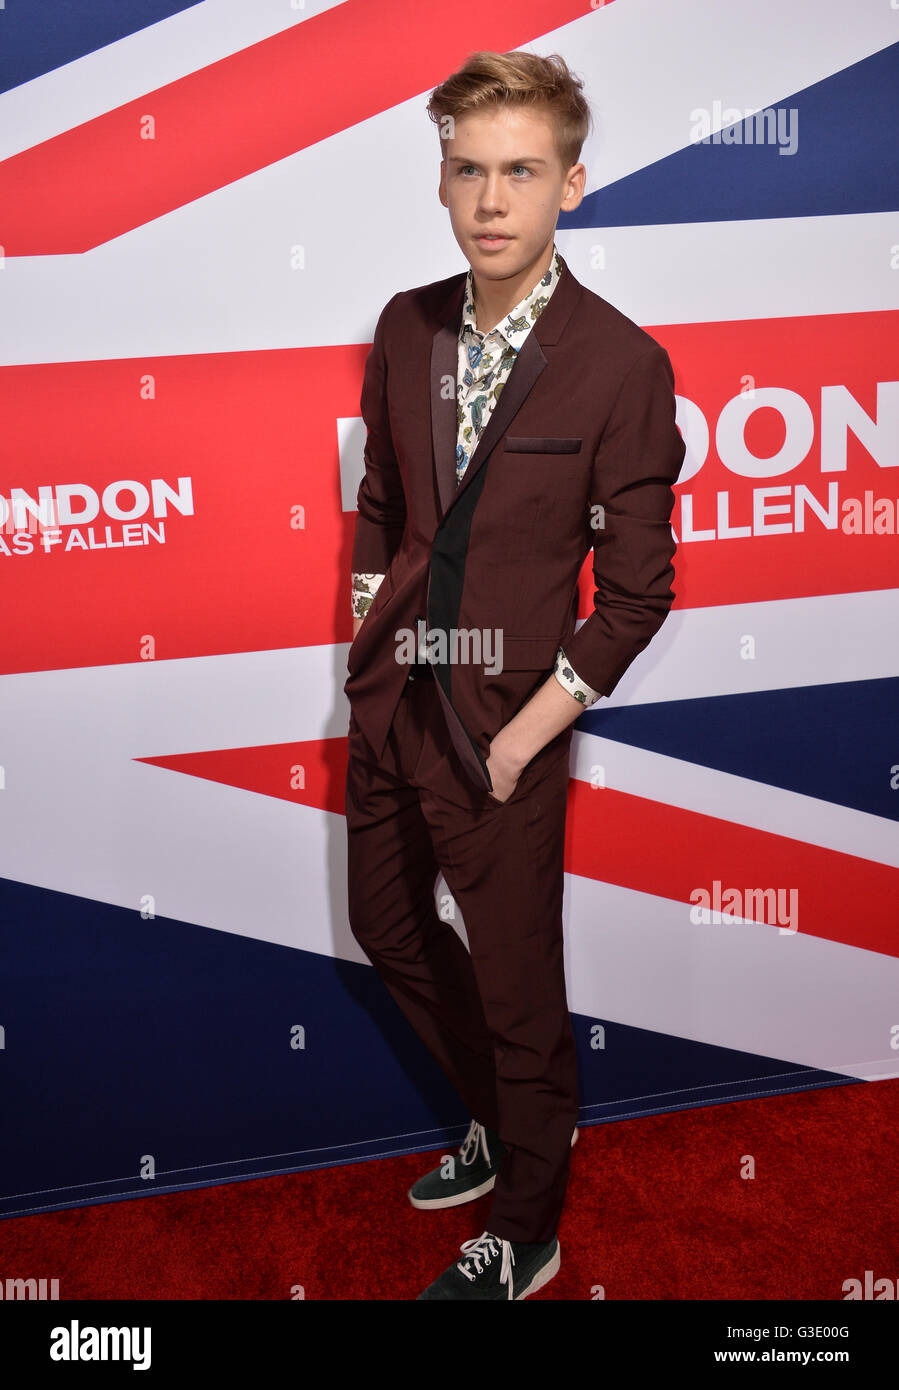 LOS ANGELES, CA - 1. März 2016: Schauspieler Aidan Alexander bei der Los-Angeles-Premiere von "London ist gefallen" Cinerama Dome, Hollywood. Stockfoto